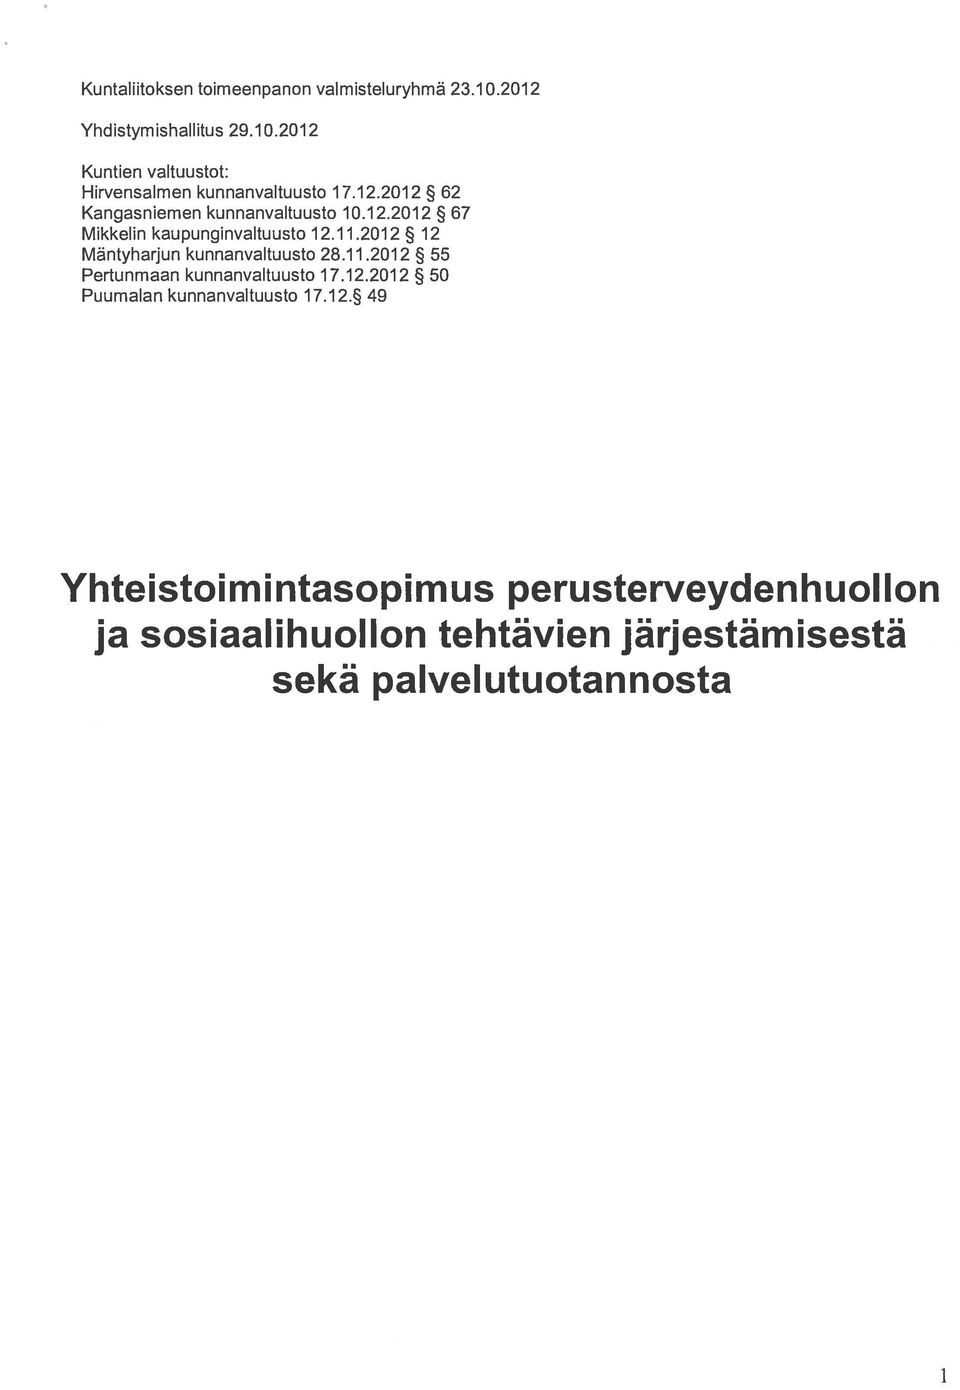 2012 12 Mäntyharjun kunnanvaltuusto 28.11.2012 55 Pertunmaan kunnanvaltuusto 17.12.2012 50 Puumalan kunnanvaltuusto 17.